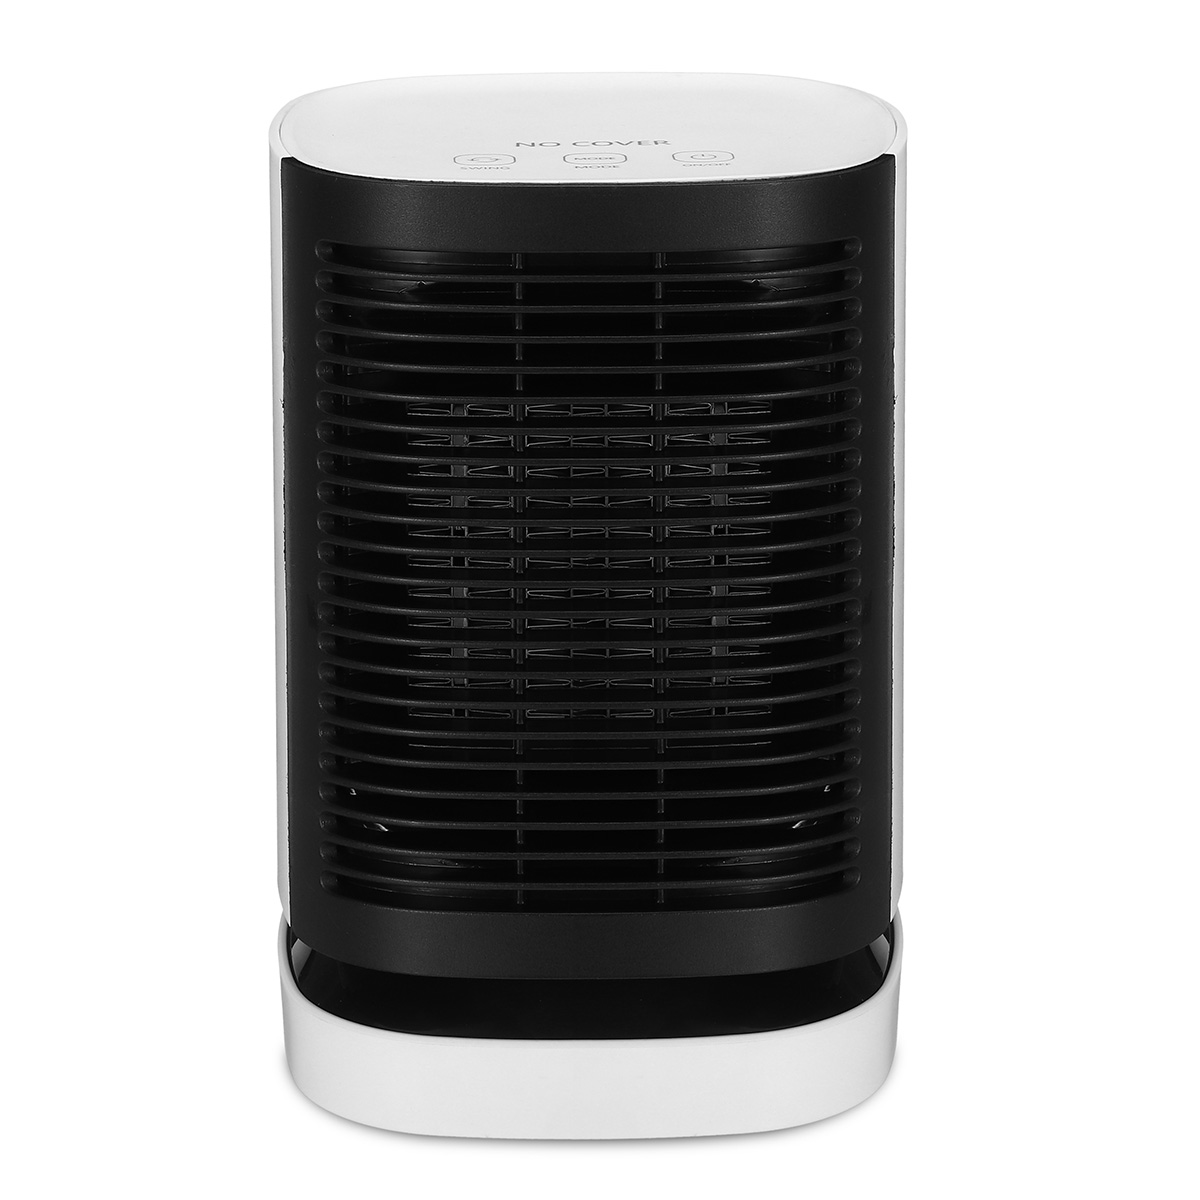 Portable Travel 950W Electric Fan Heater Home Office Warm Air Blower Winter Warmer Heating Fan